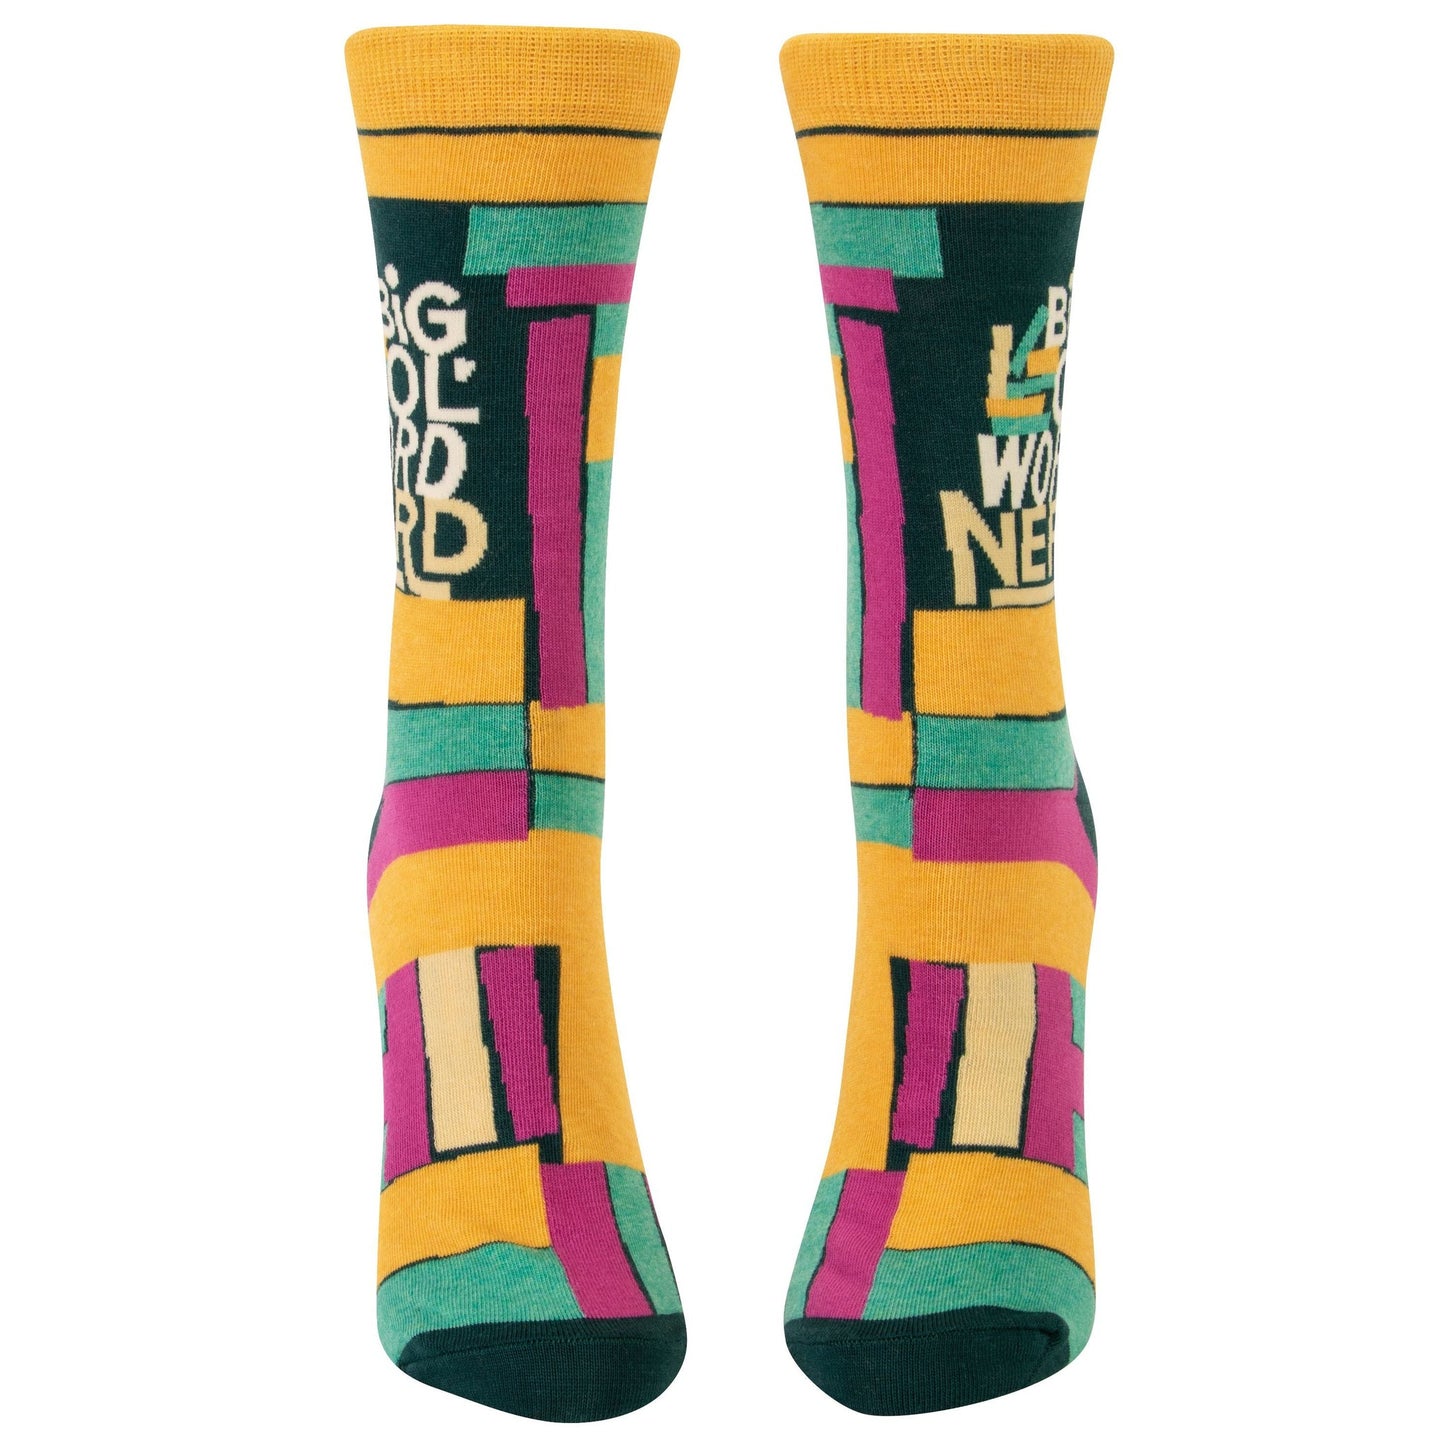 Big Ol' Word Nerd Women's Crew Novelty Socks